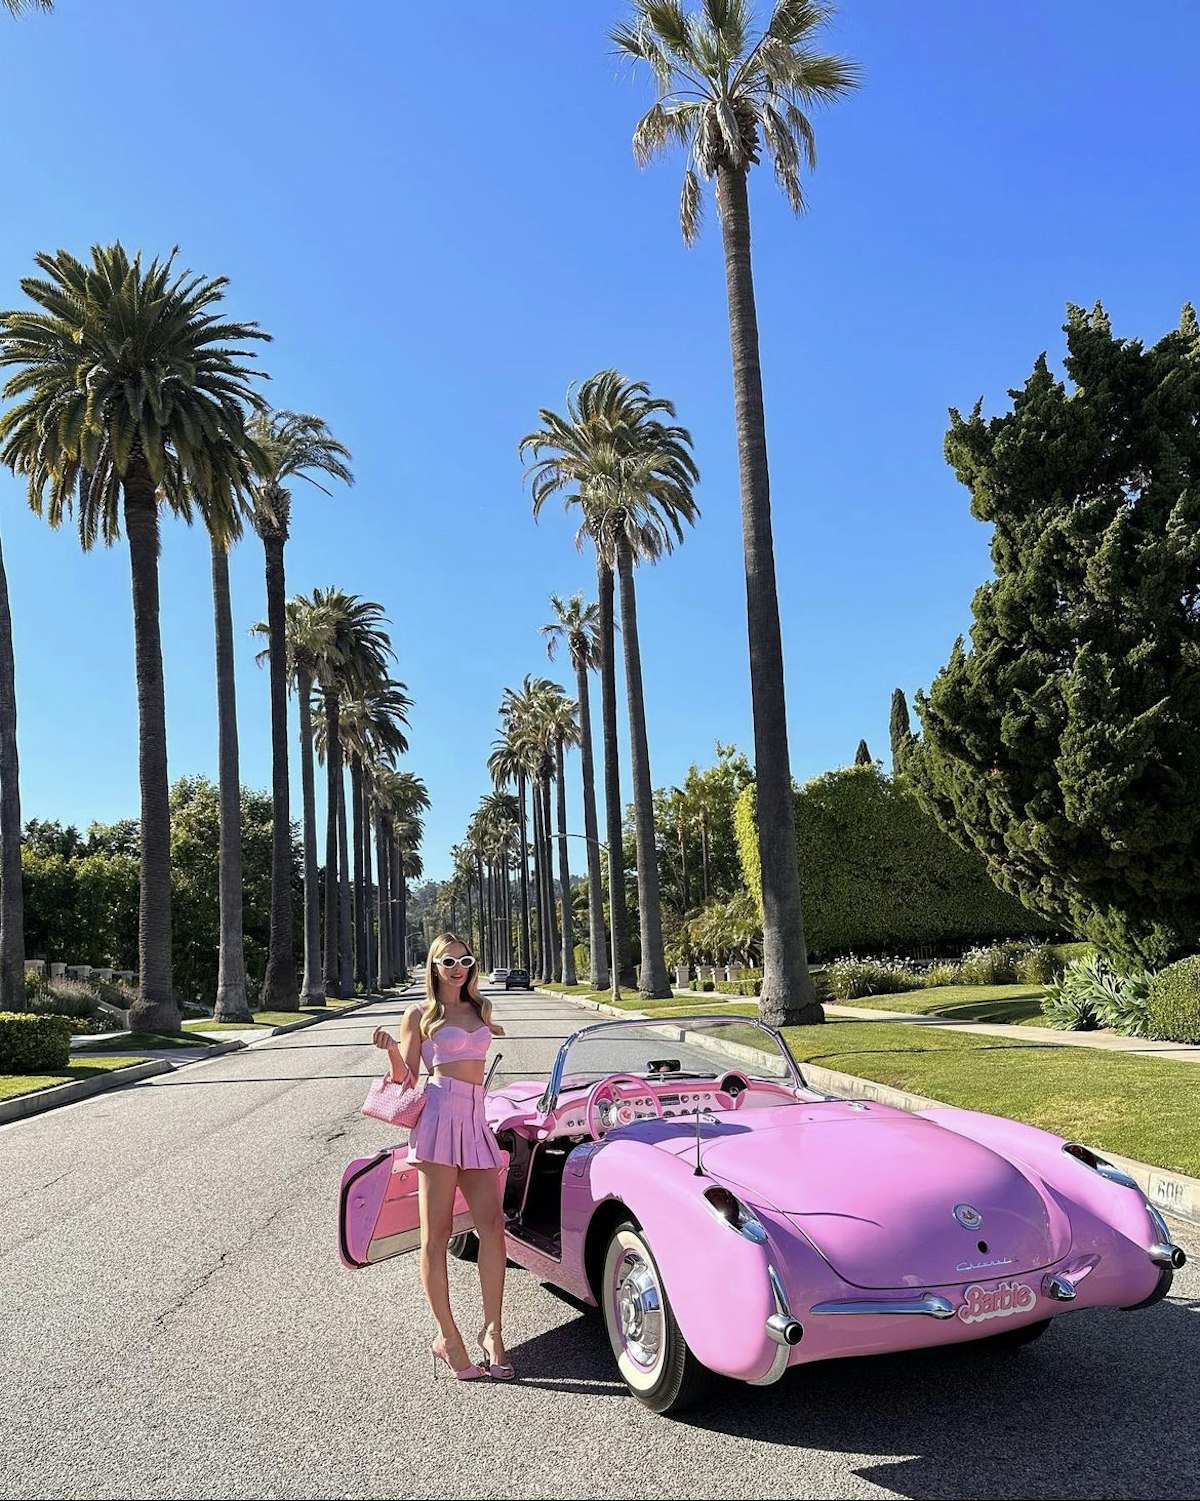 Corra no estilo Malibu com carros temáticos gratuitos da Barbie em